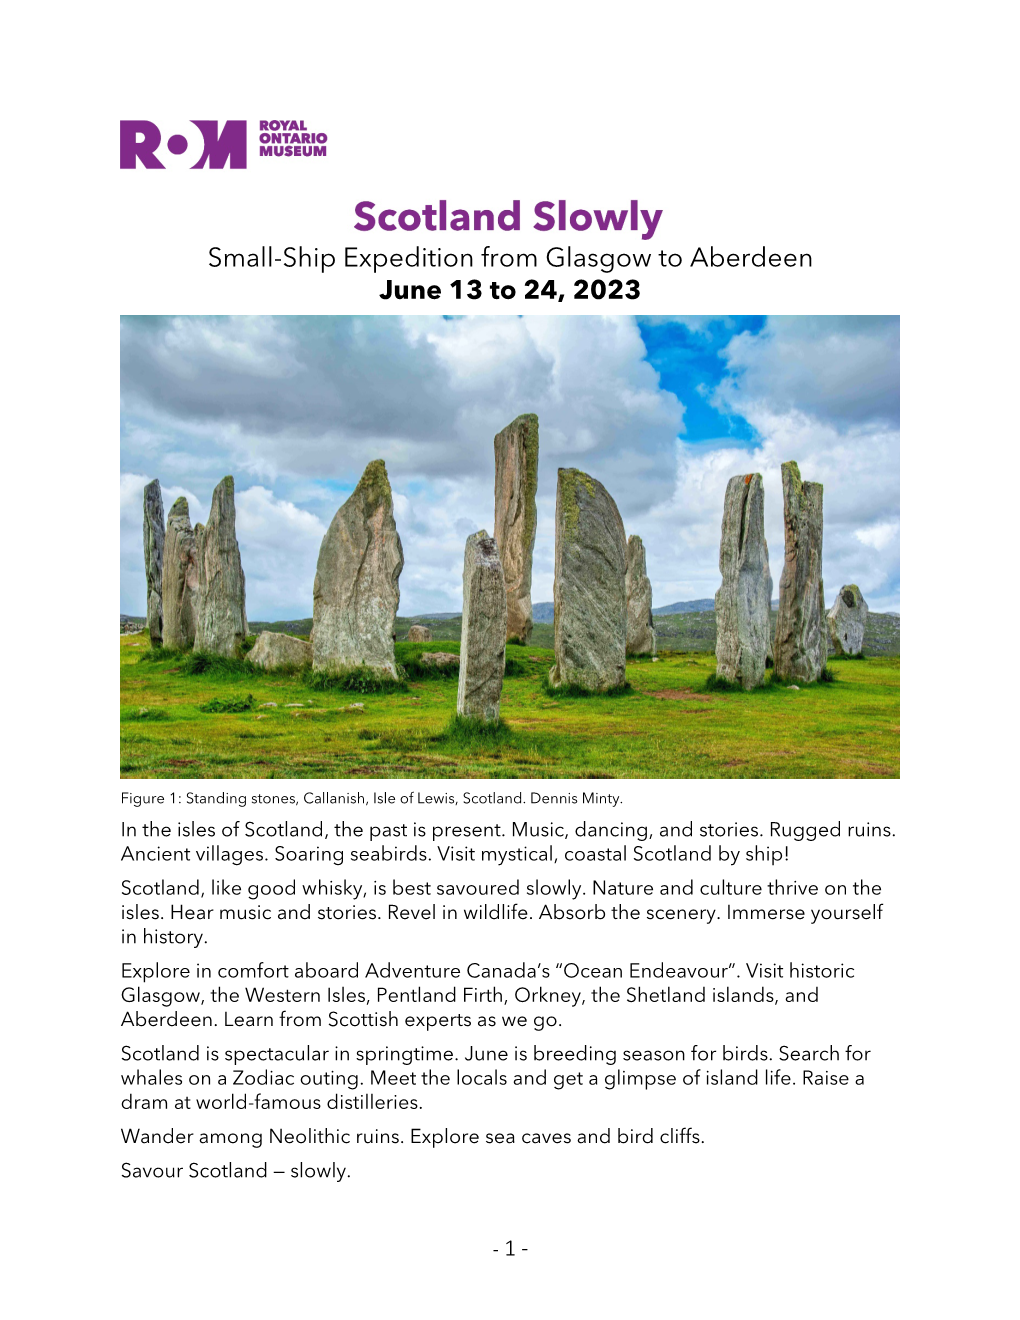 Romtravel Scotland Slowly Brochure